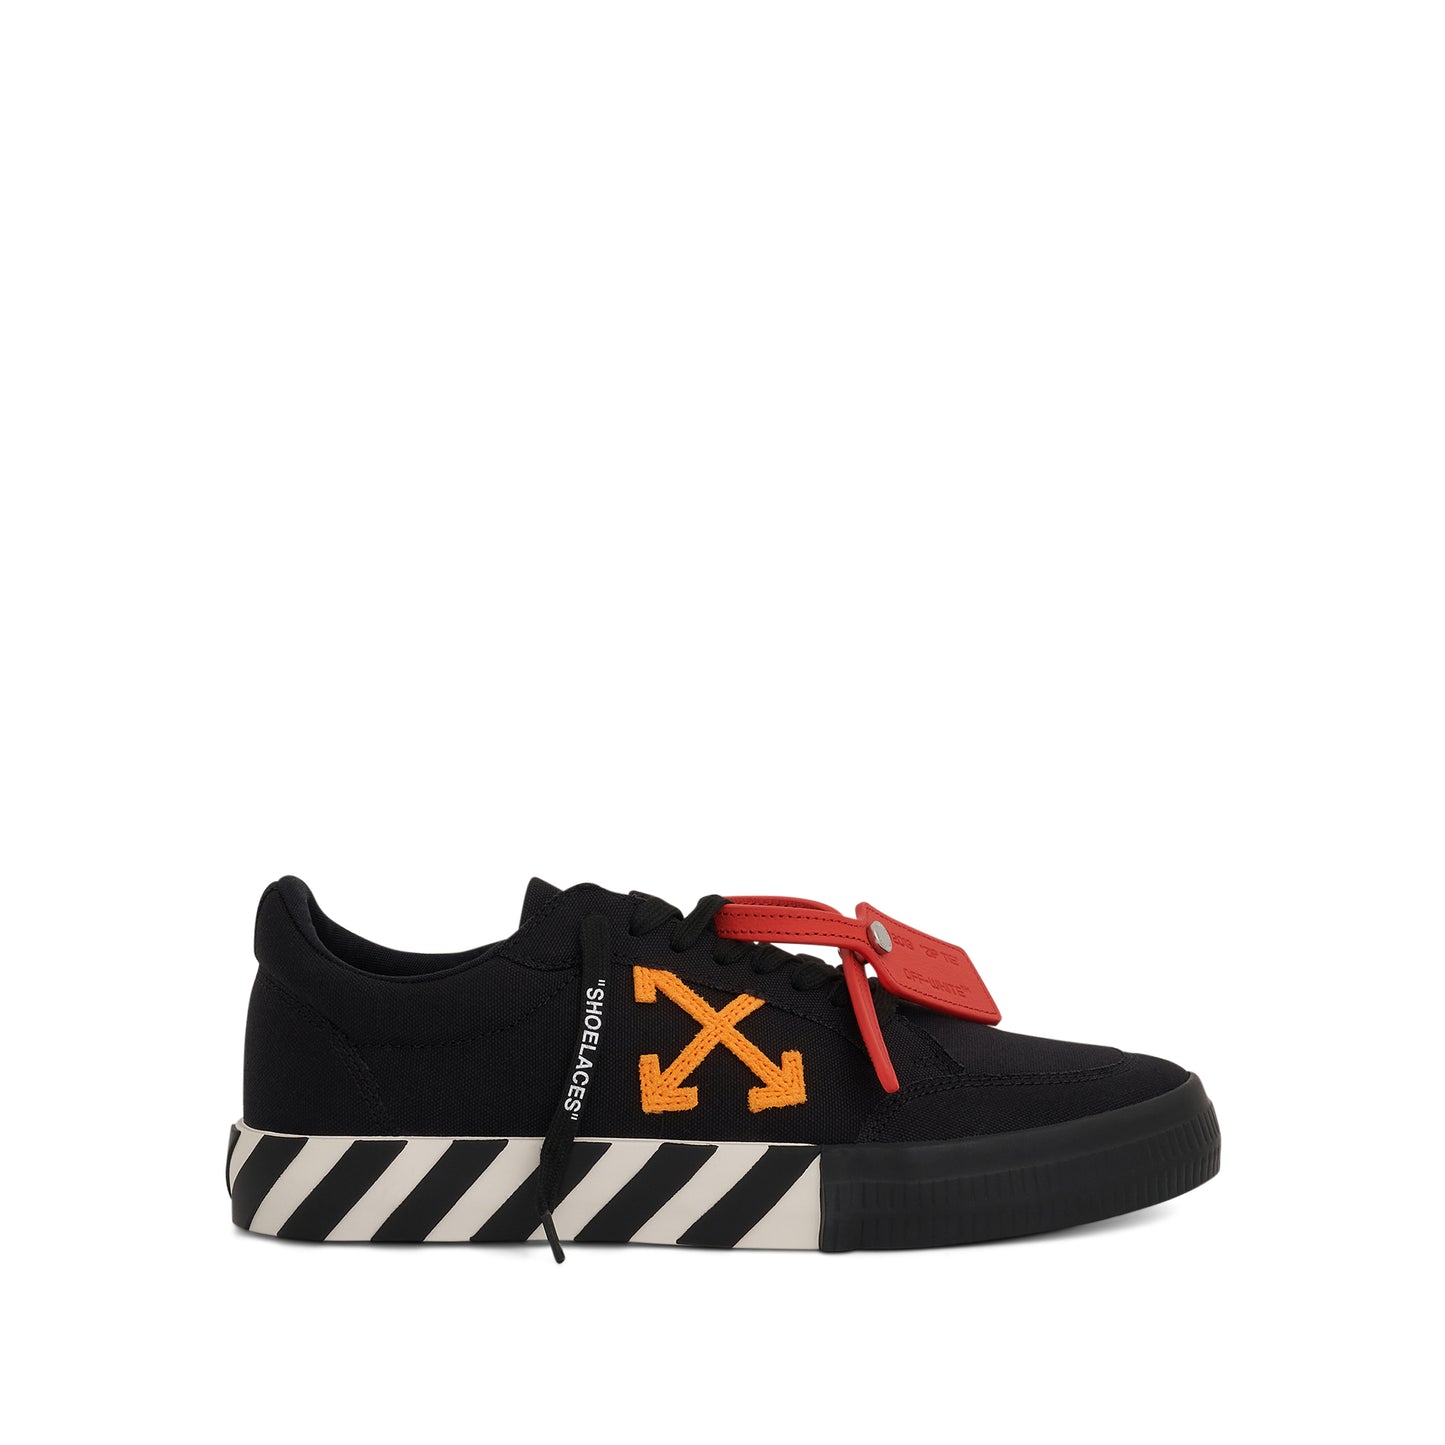 Low Vulcanized Canvas Sneaker in Black/Orange